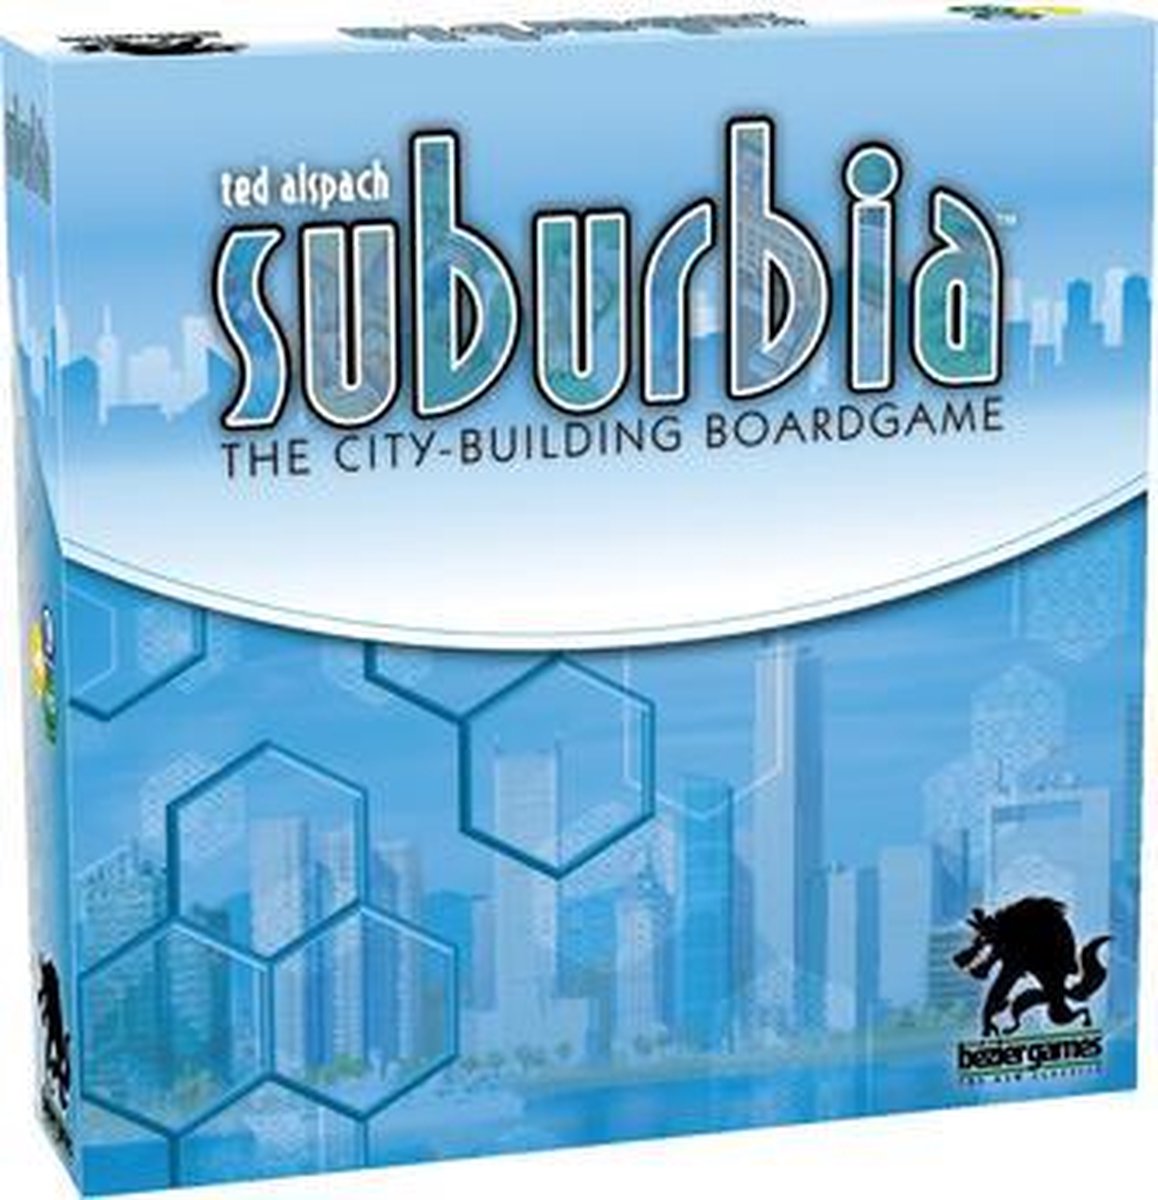 suburbia 2 game sucks